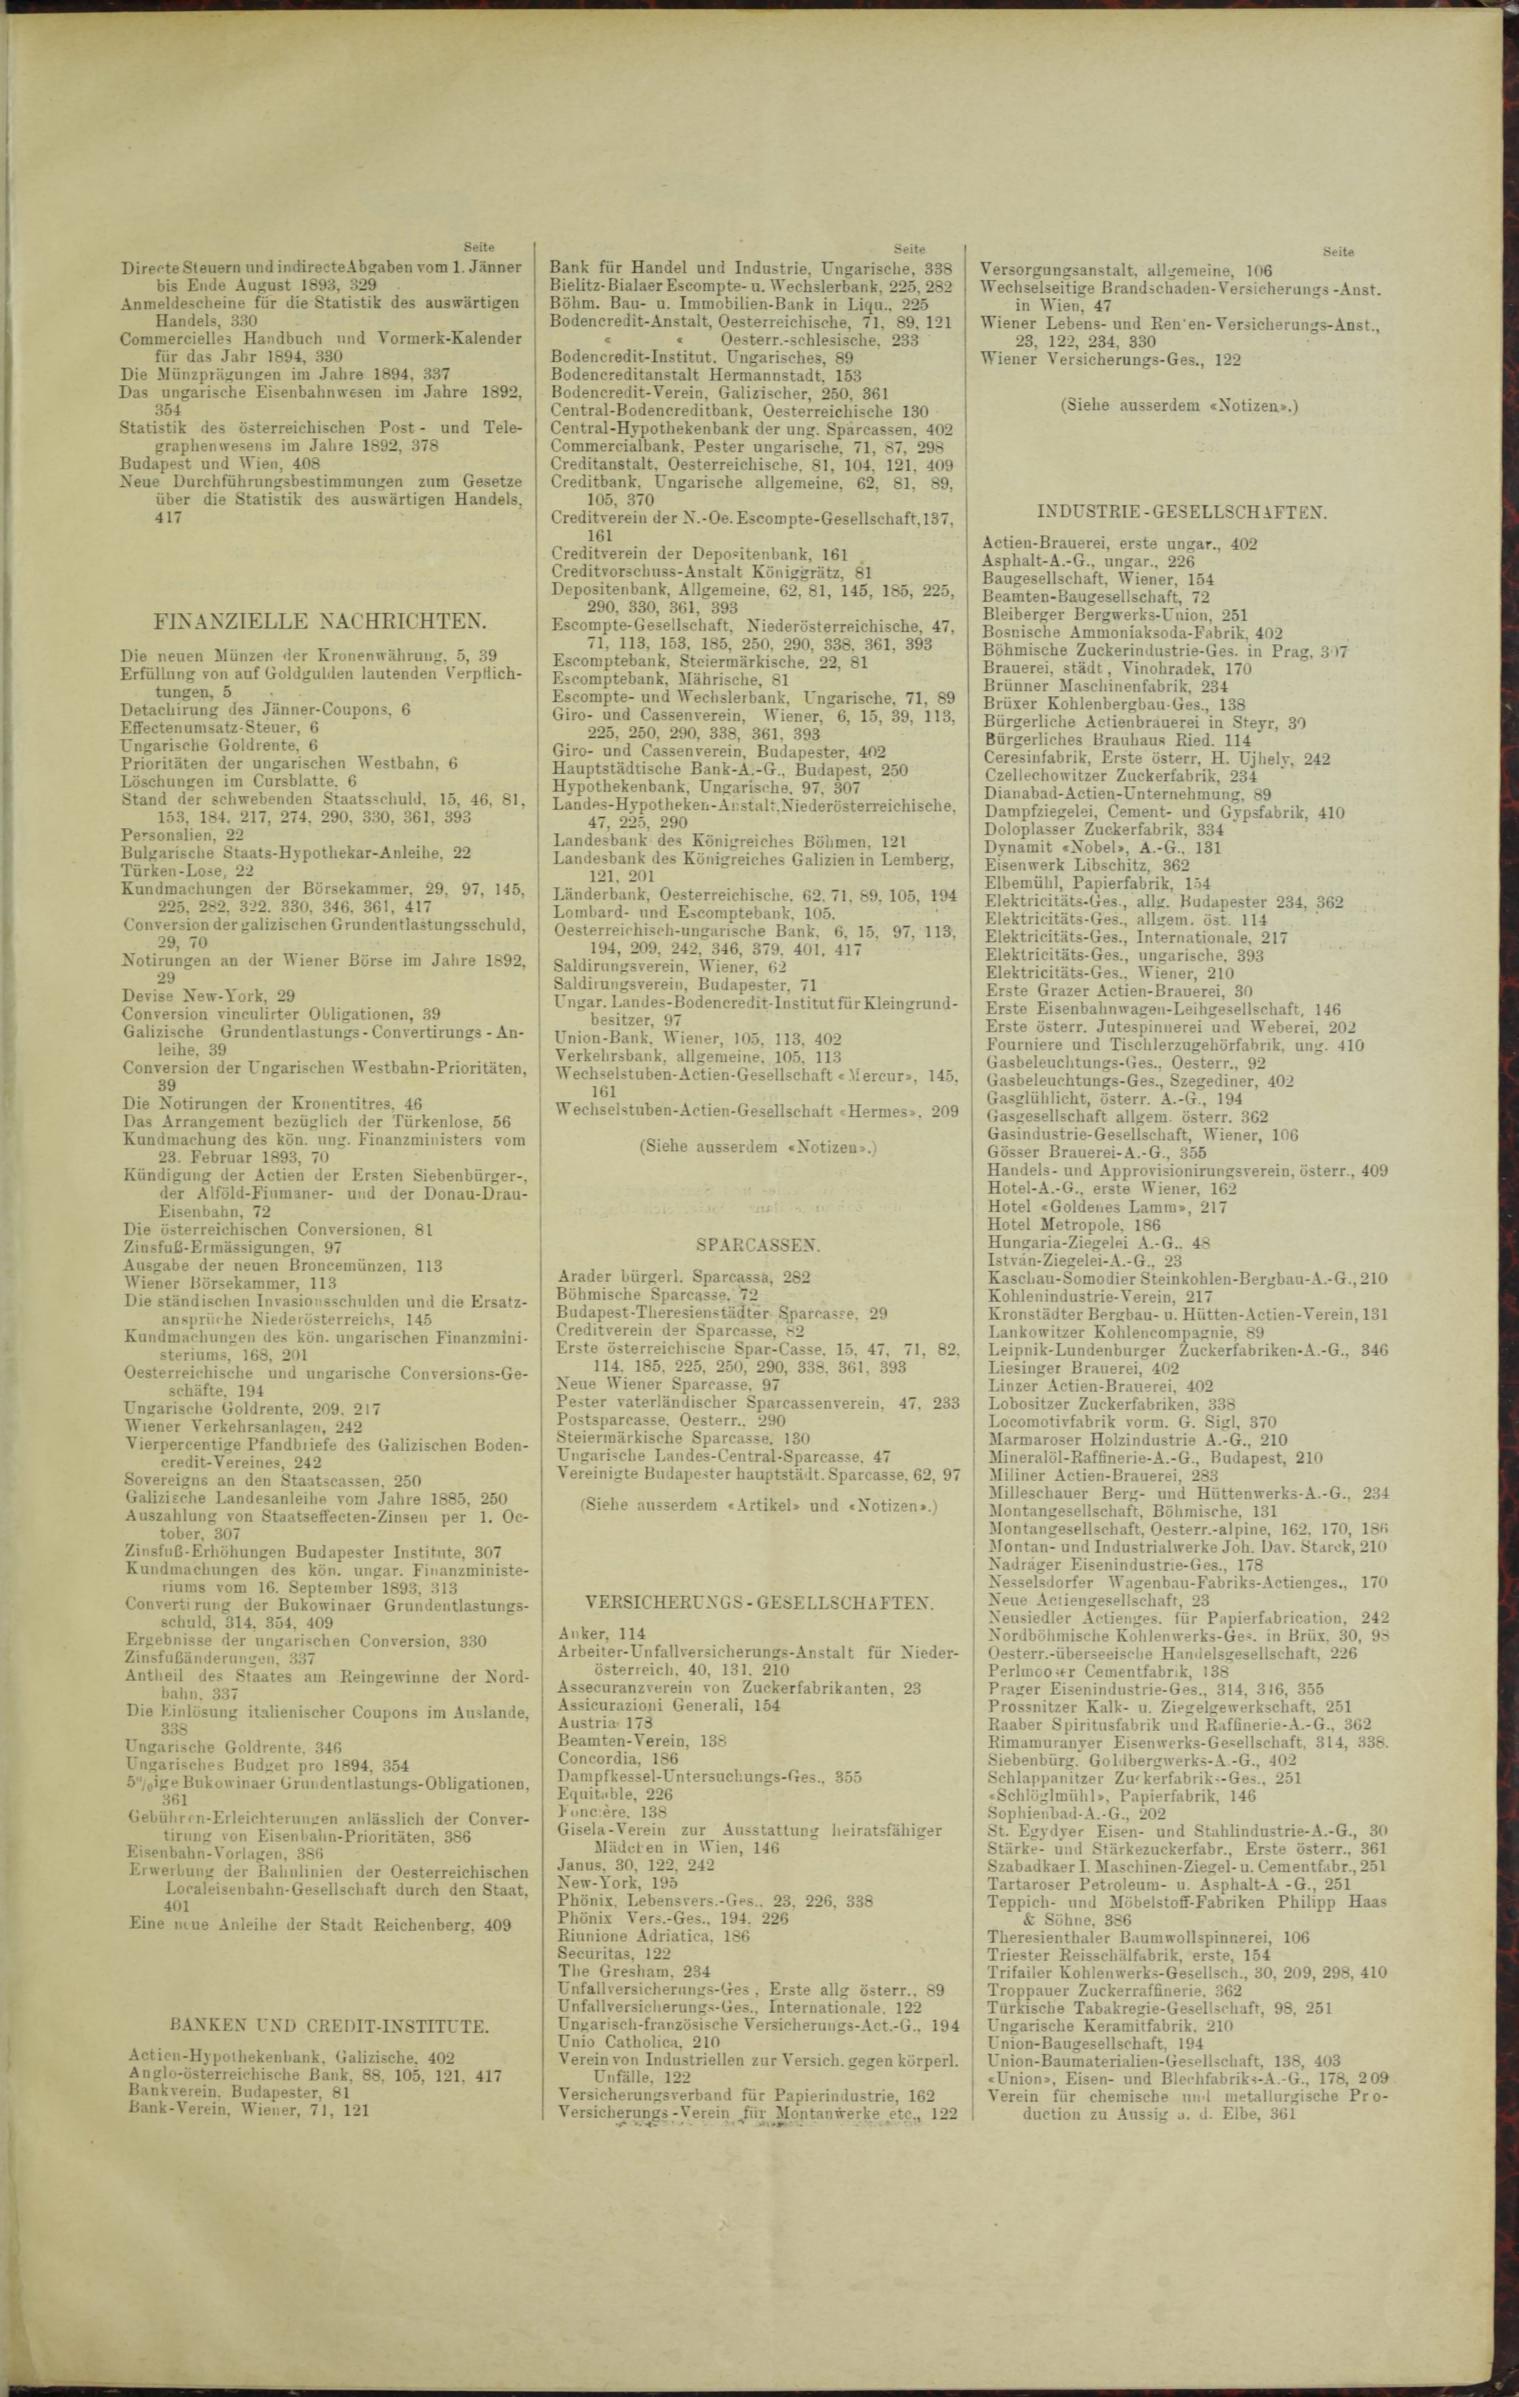 Der Tresor 16.02.1893 - Seite 11